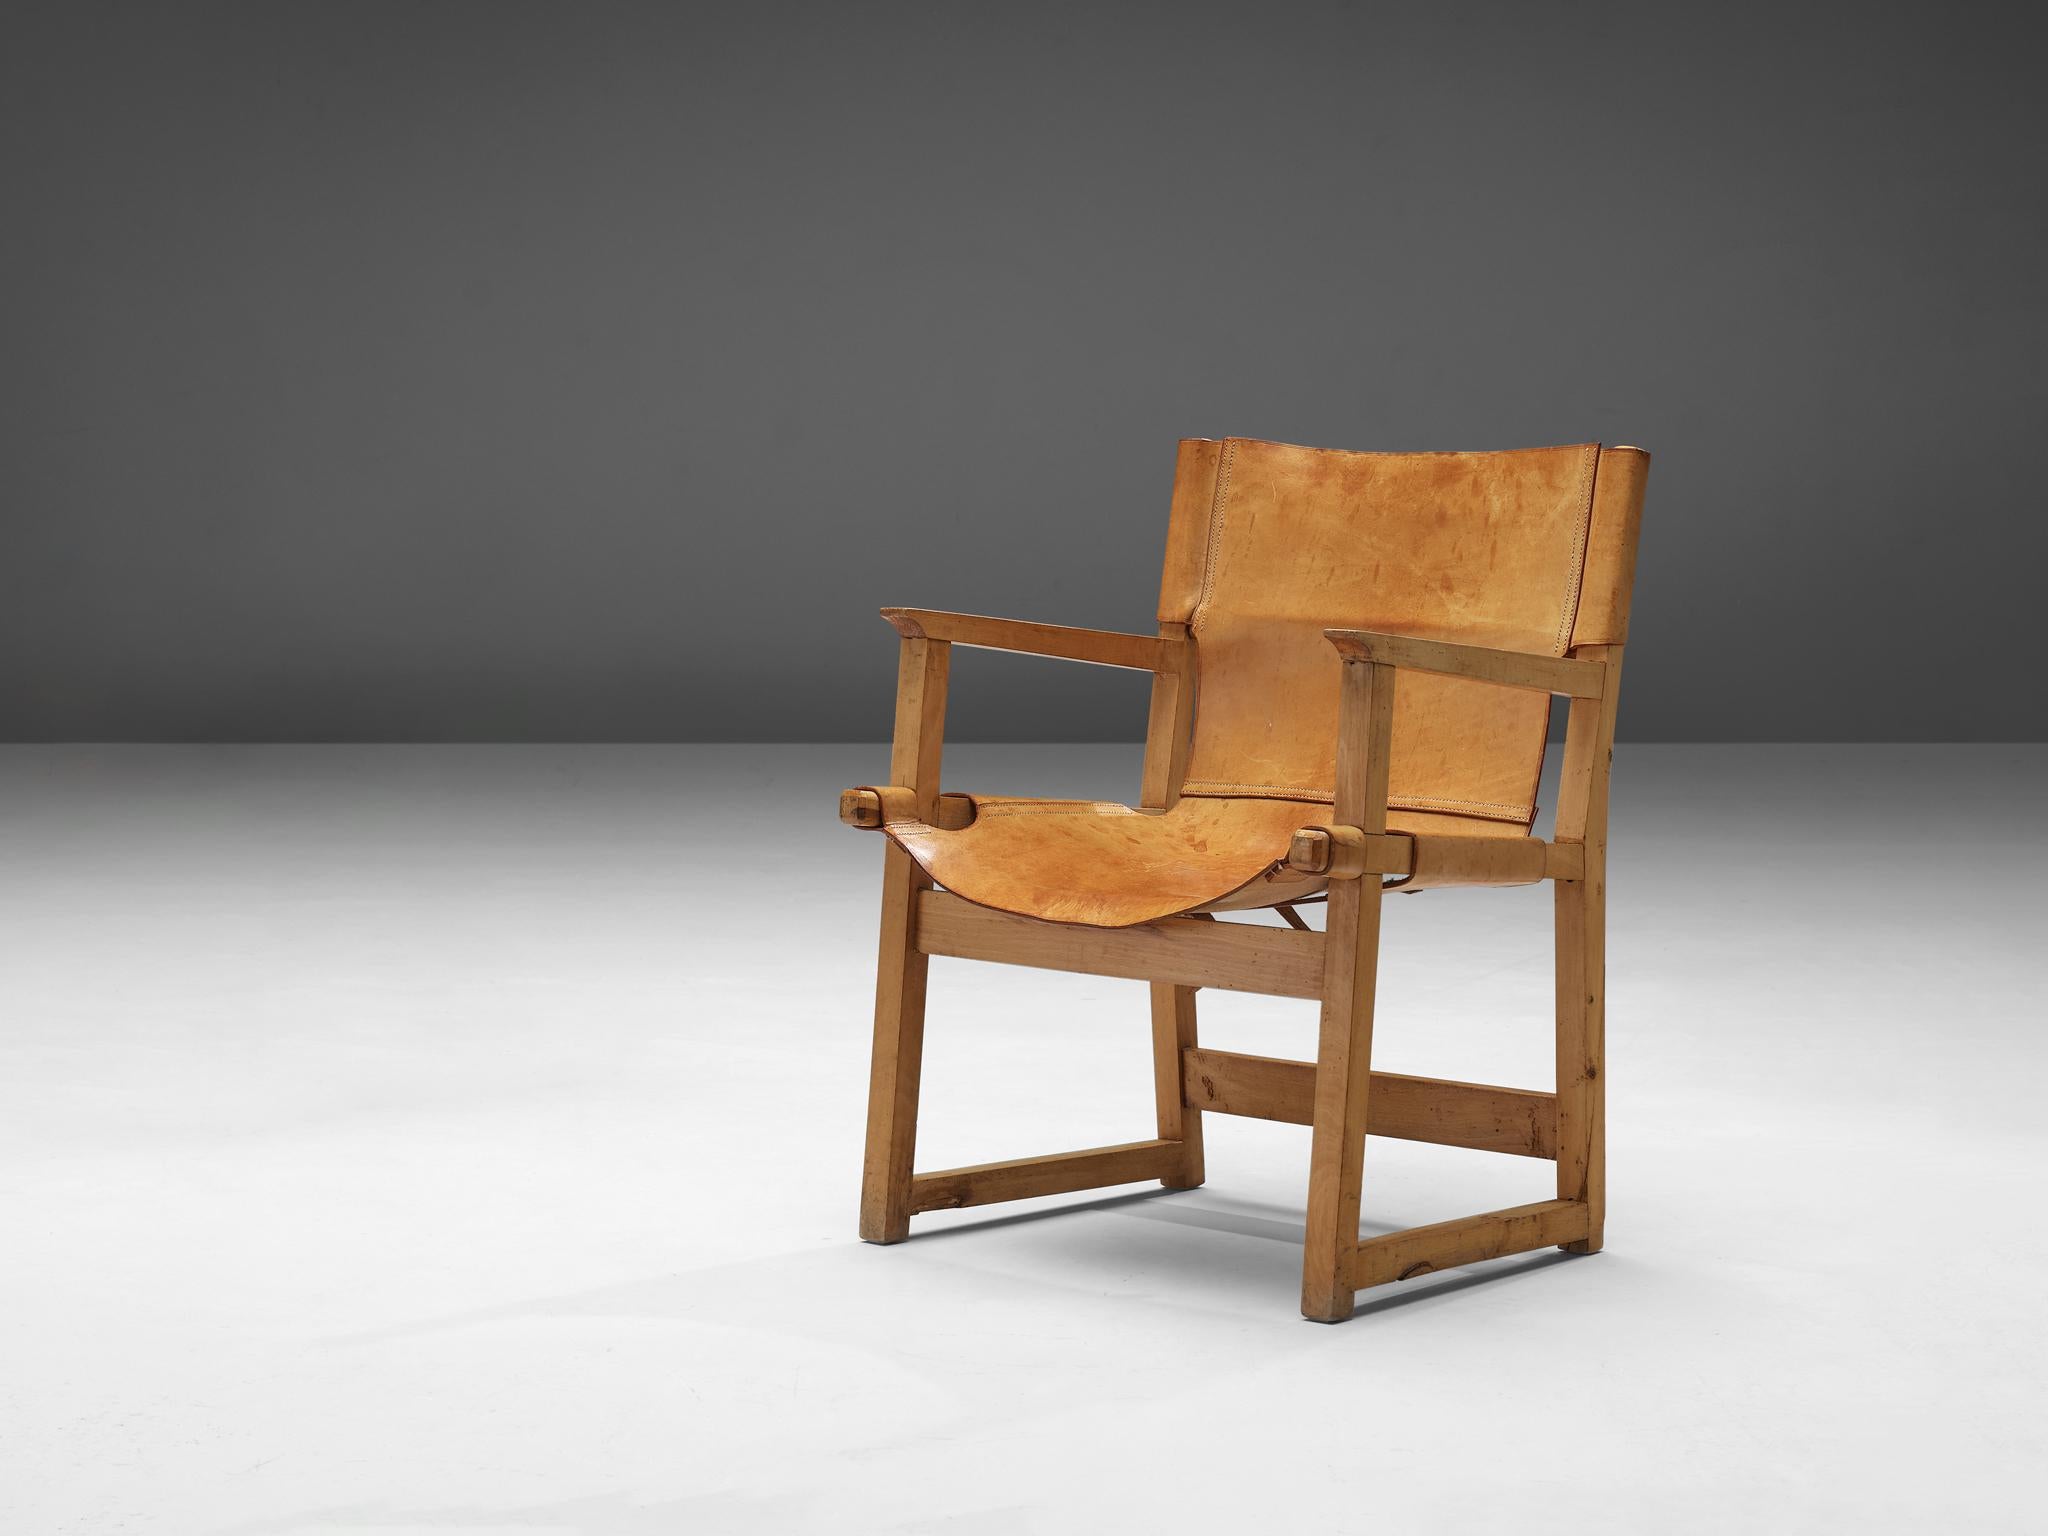 Paco Muñoz, Sessel, Leder, Buche, Spanien, 1950er Jahre

Safari- oder Riaza-Sessel aus der Mitte des Jahrhunderts des spanischen Designers Paco Muñoz. Dieser Stuhl ist aus hochwertigem Sattelleder mit abnehmbaren Schnallen unter der Sitzfläche